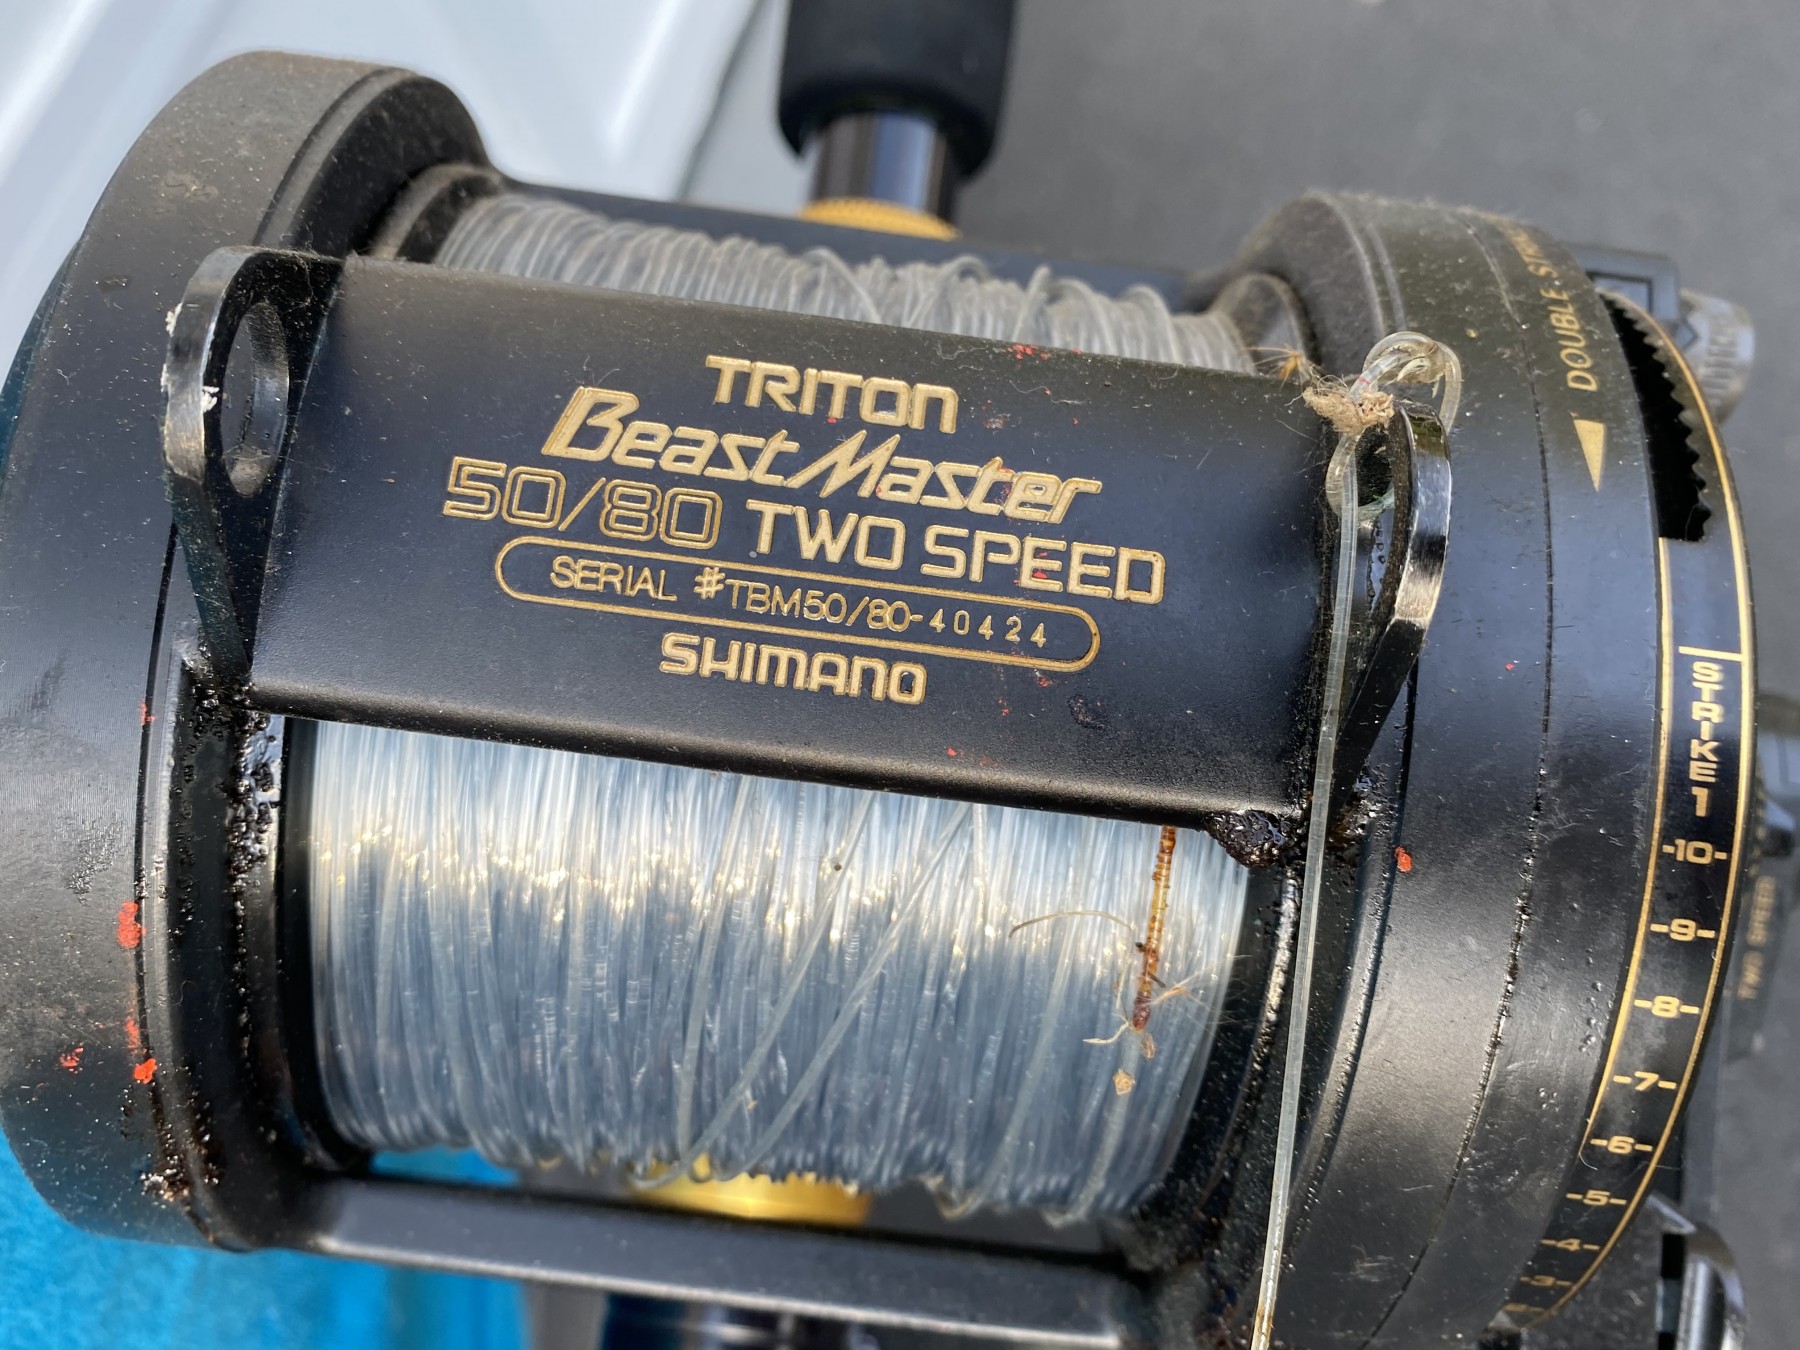 Shimano Triton Beast Master 50/80 2 Speed Fishing Reel #170107